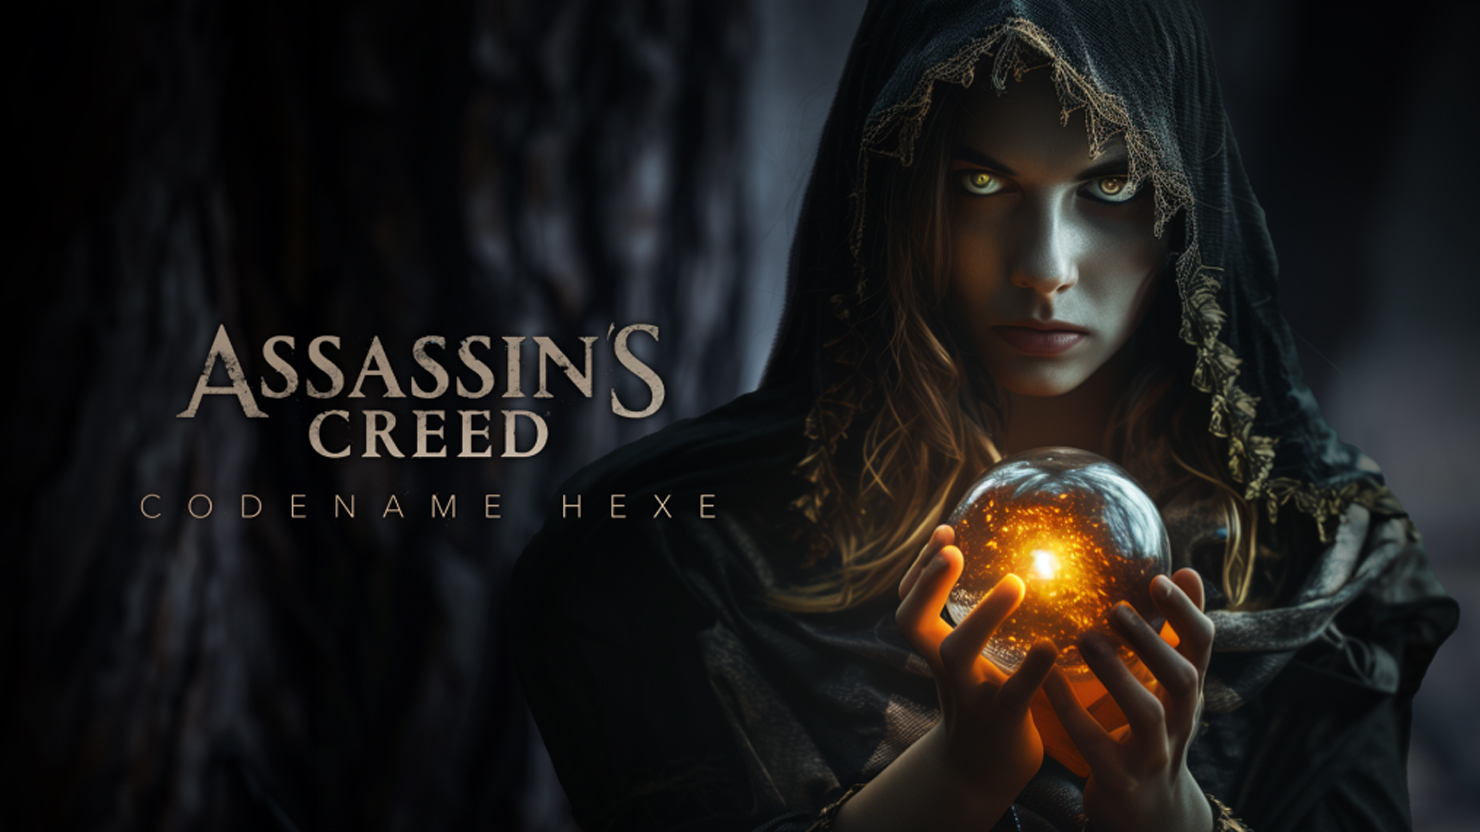 Assassin's Creed Hexe окончательно похоронит историчность